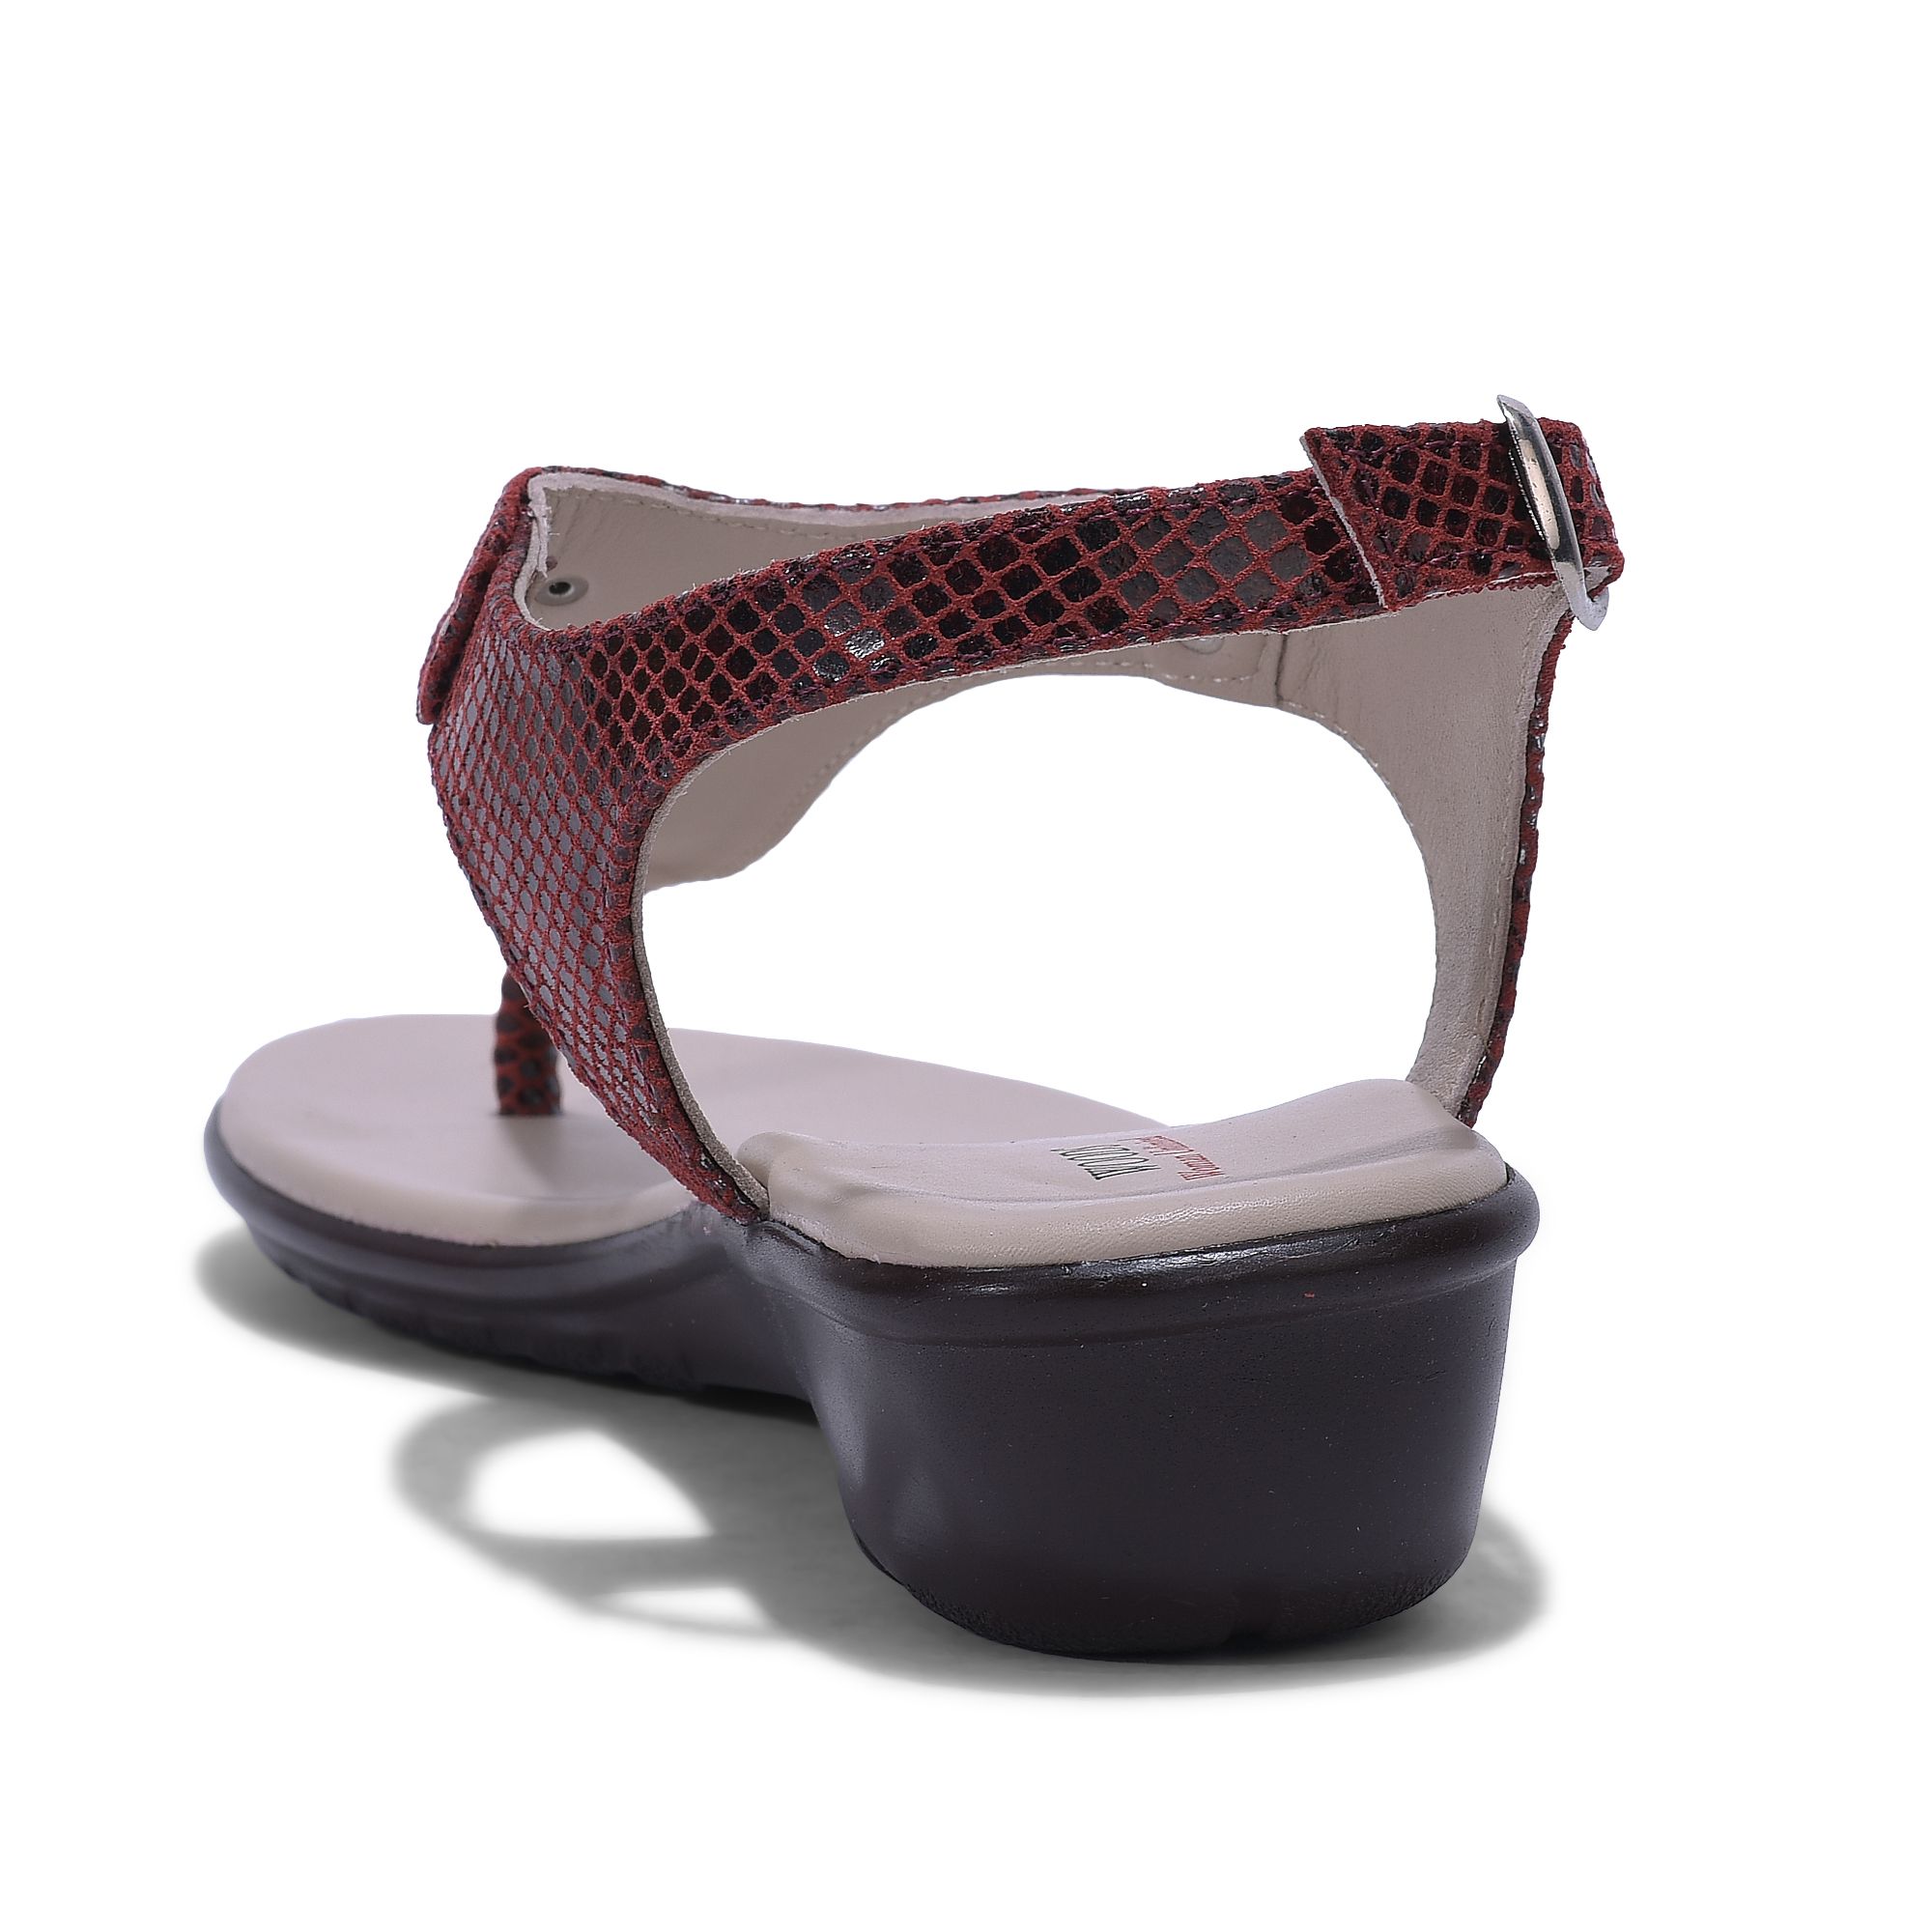 Red T-strap sandal for women